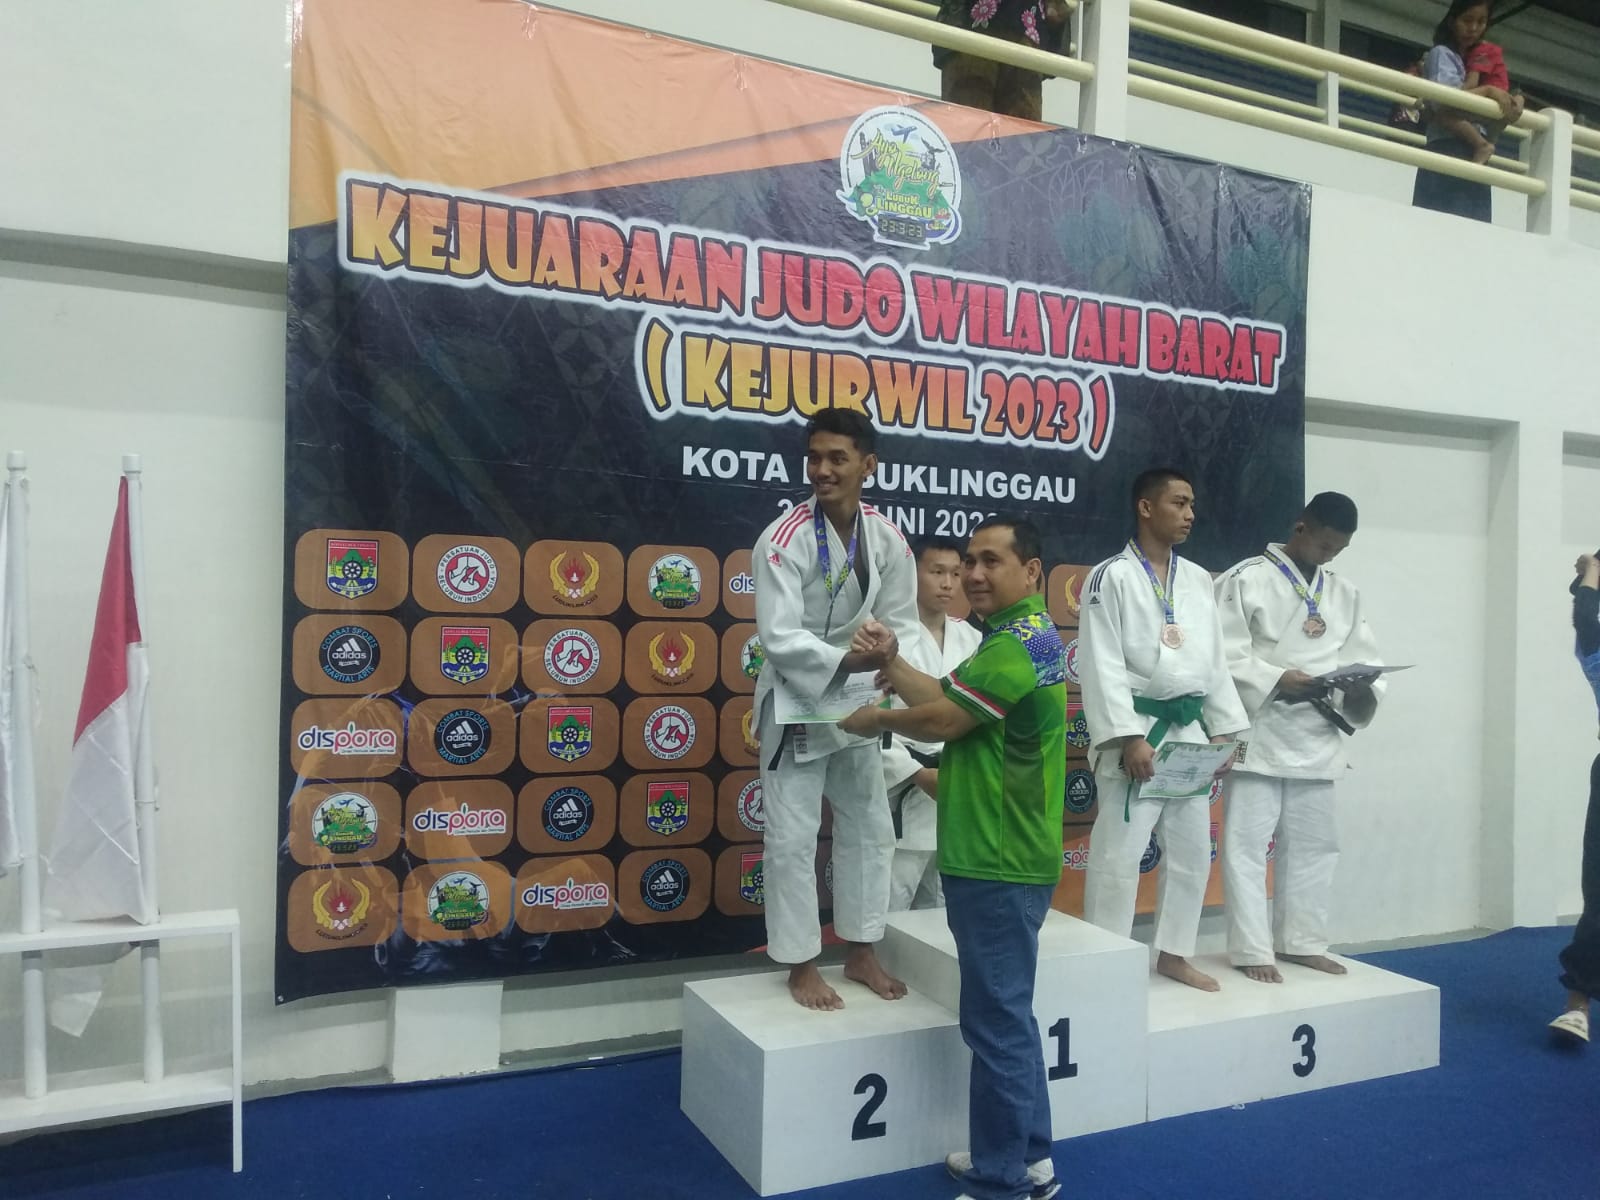 Pejudo Asal Sumsel Raih Gelar Pejudo Terbaik, Berikut Nama-Nama Pemenang Kejuraan Judo Wilayah Barat di Lubukl